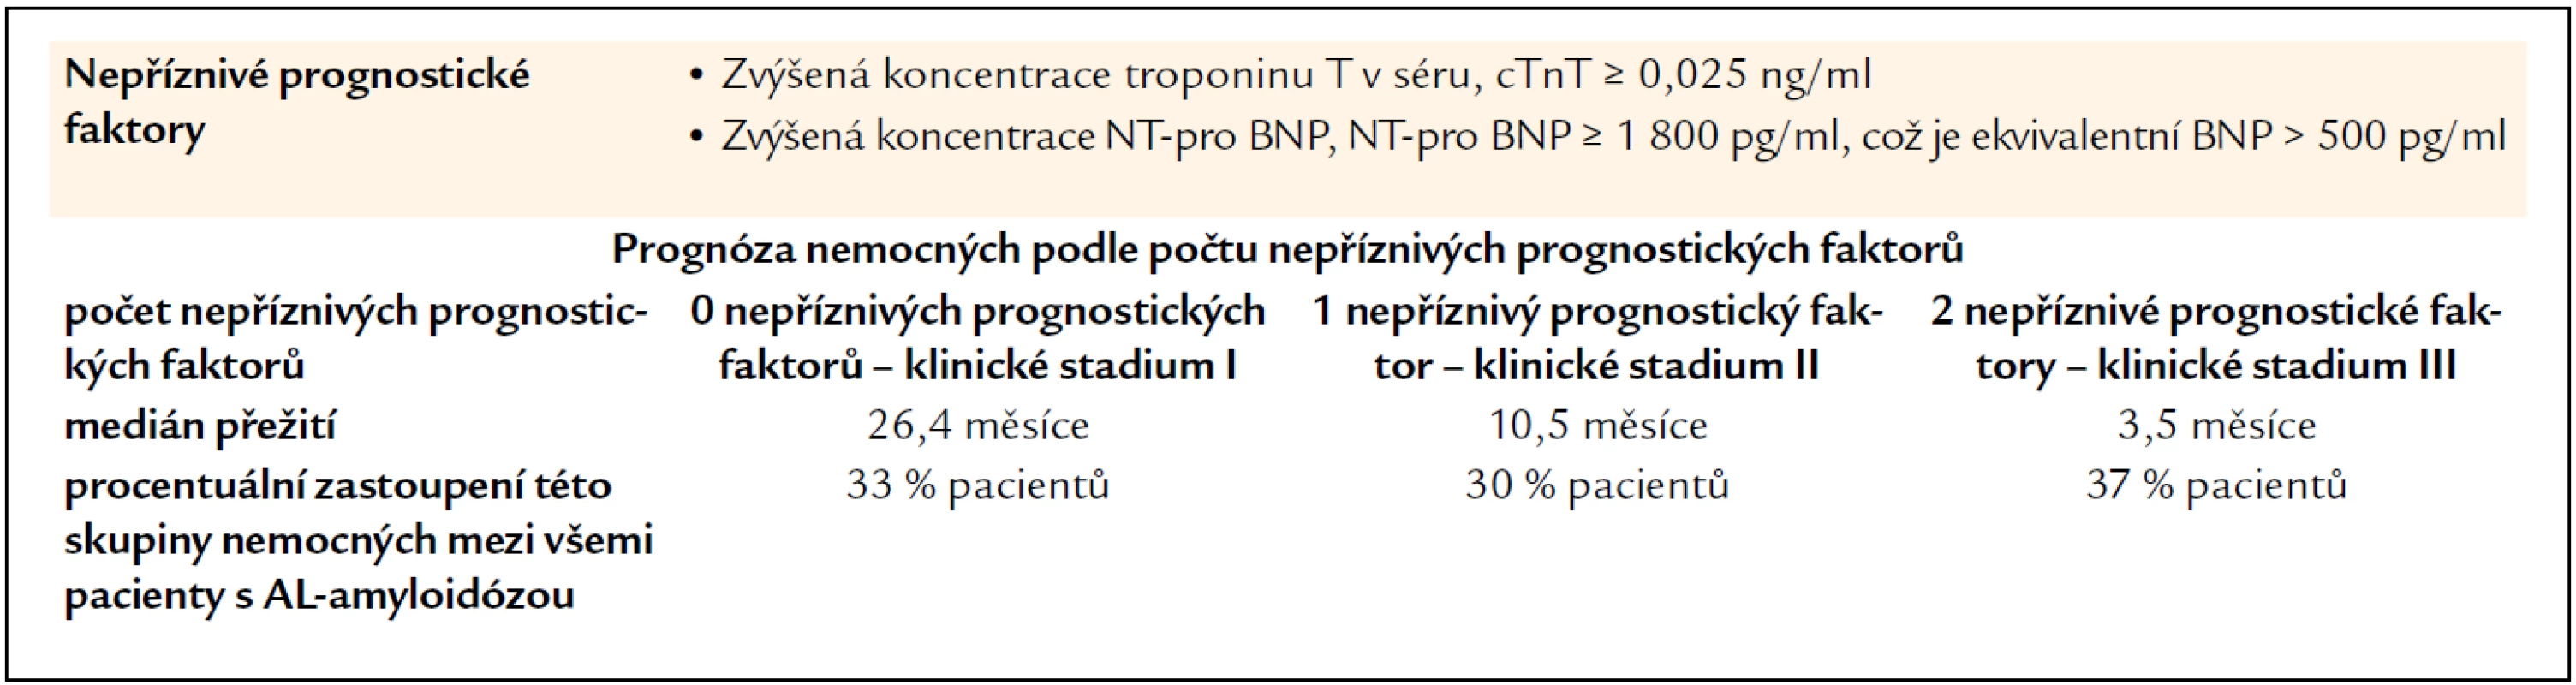 Prognostický index založený jenom na troponinu a NT-pro BNP (podle [16]).